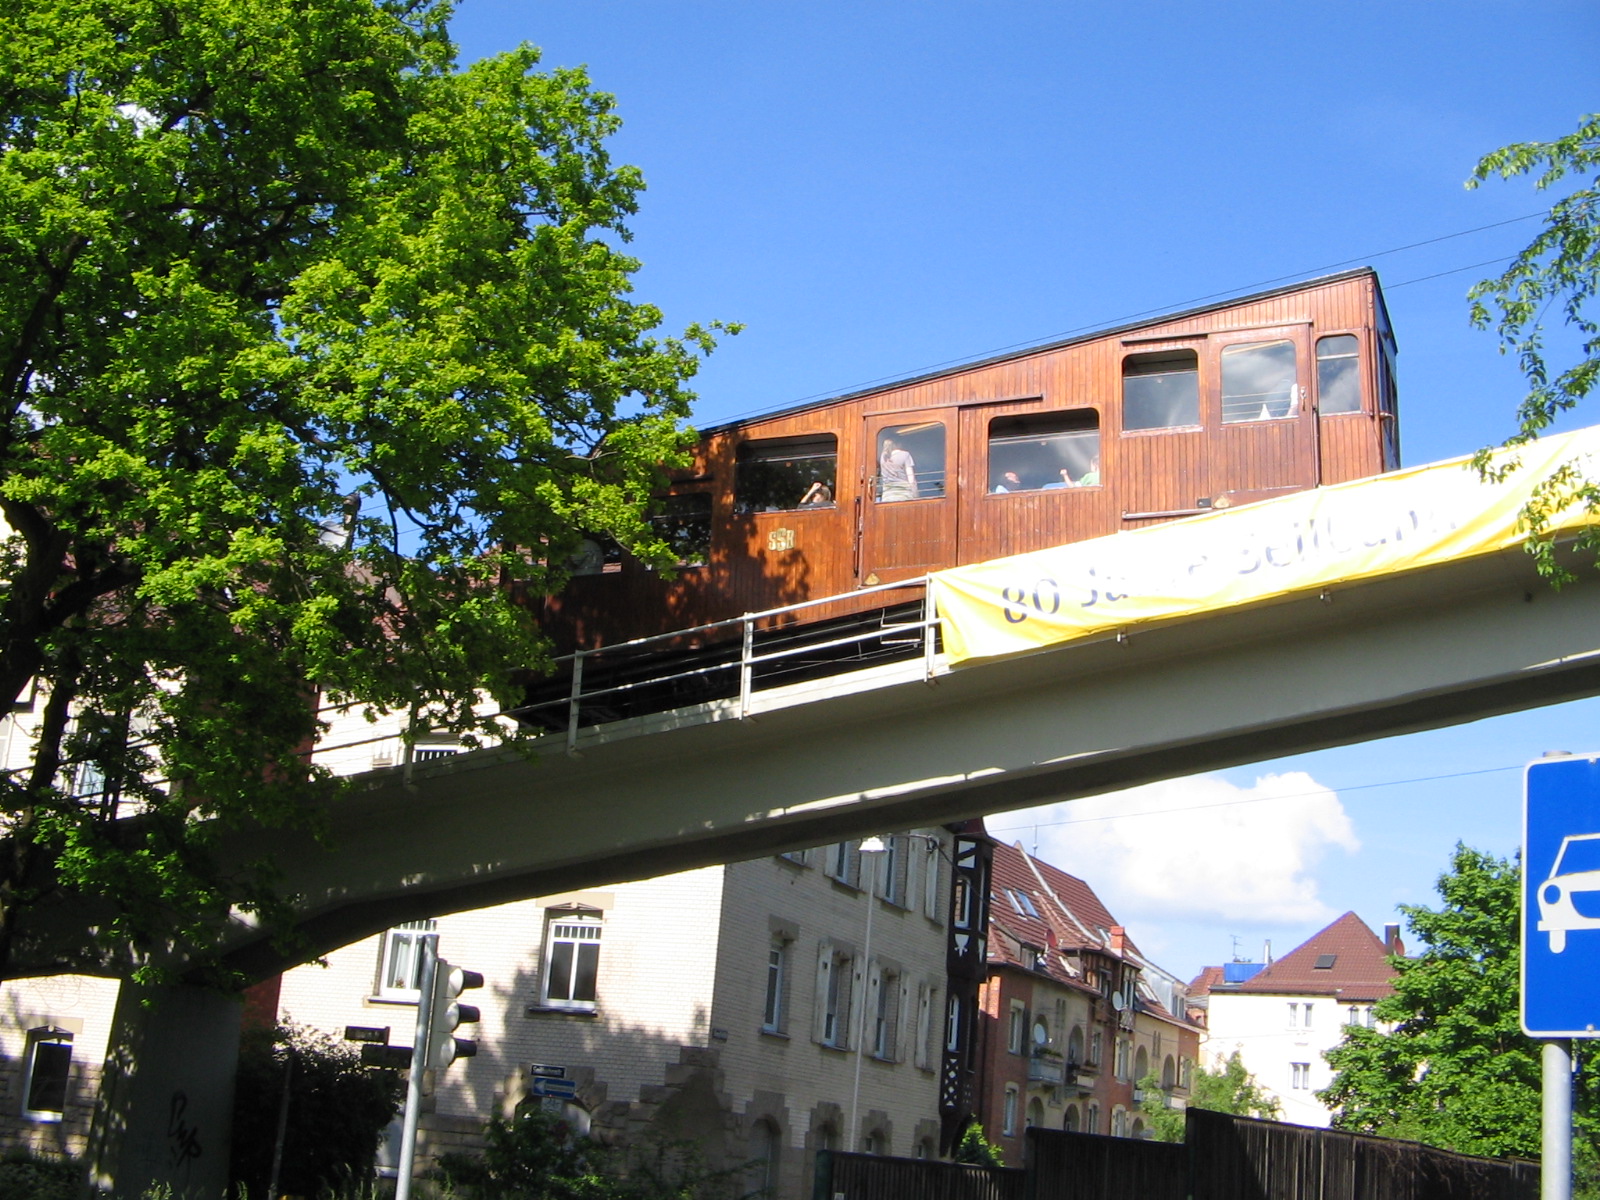 23.05.2010 - Brücke der Standseilbahn in Stuttgart - Wanderstrecke Internationale Volkswandertage Stuttgart 2010